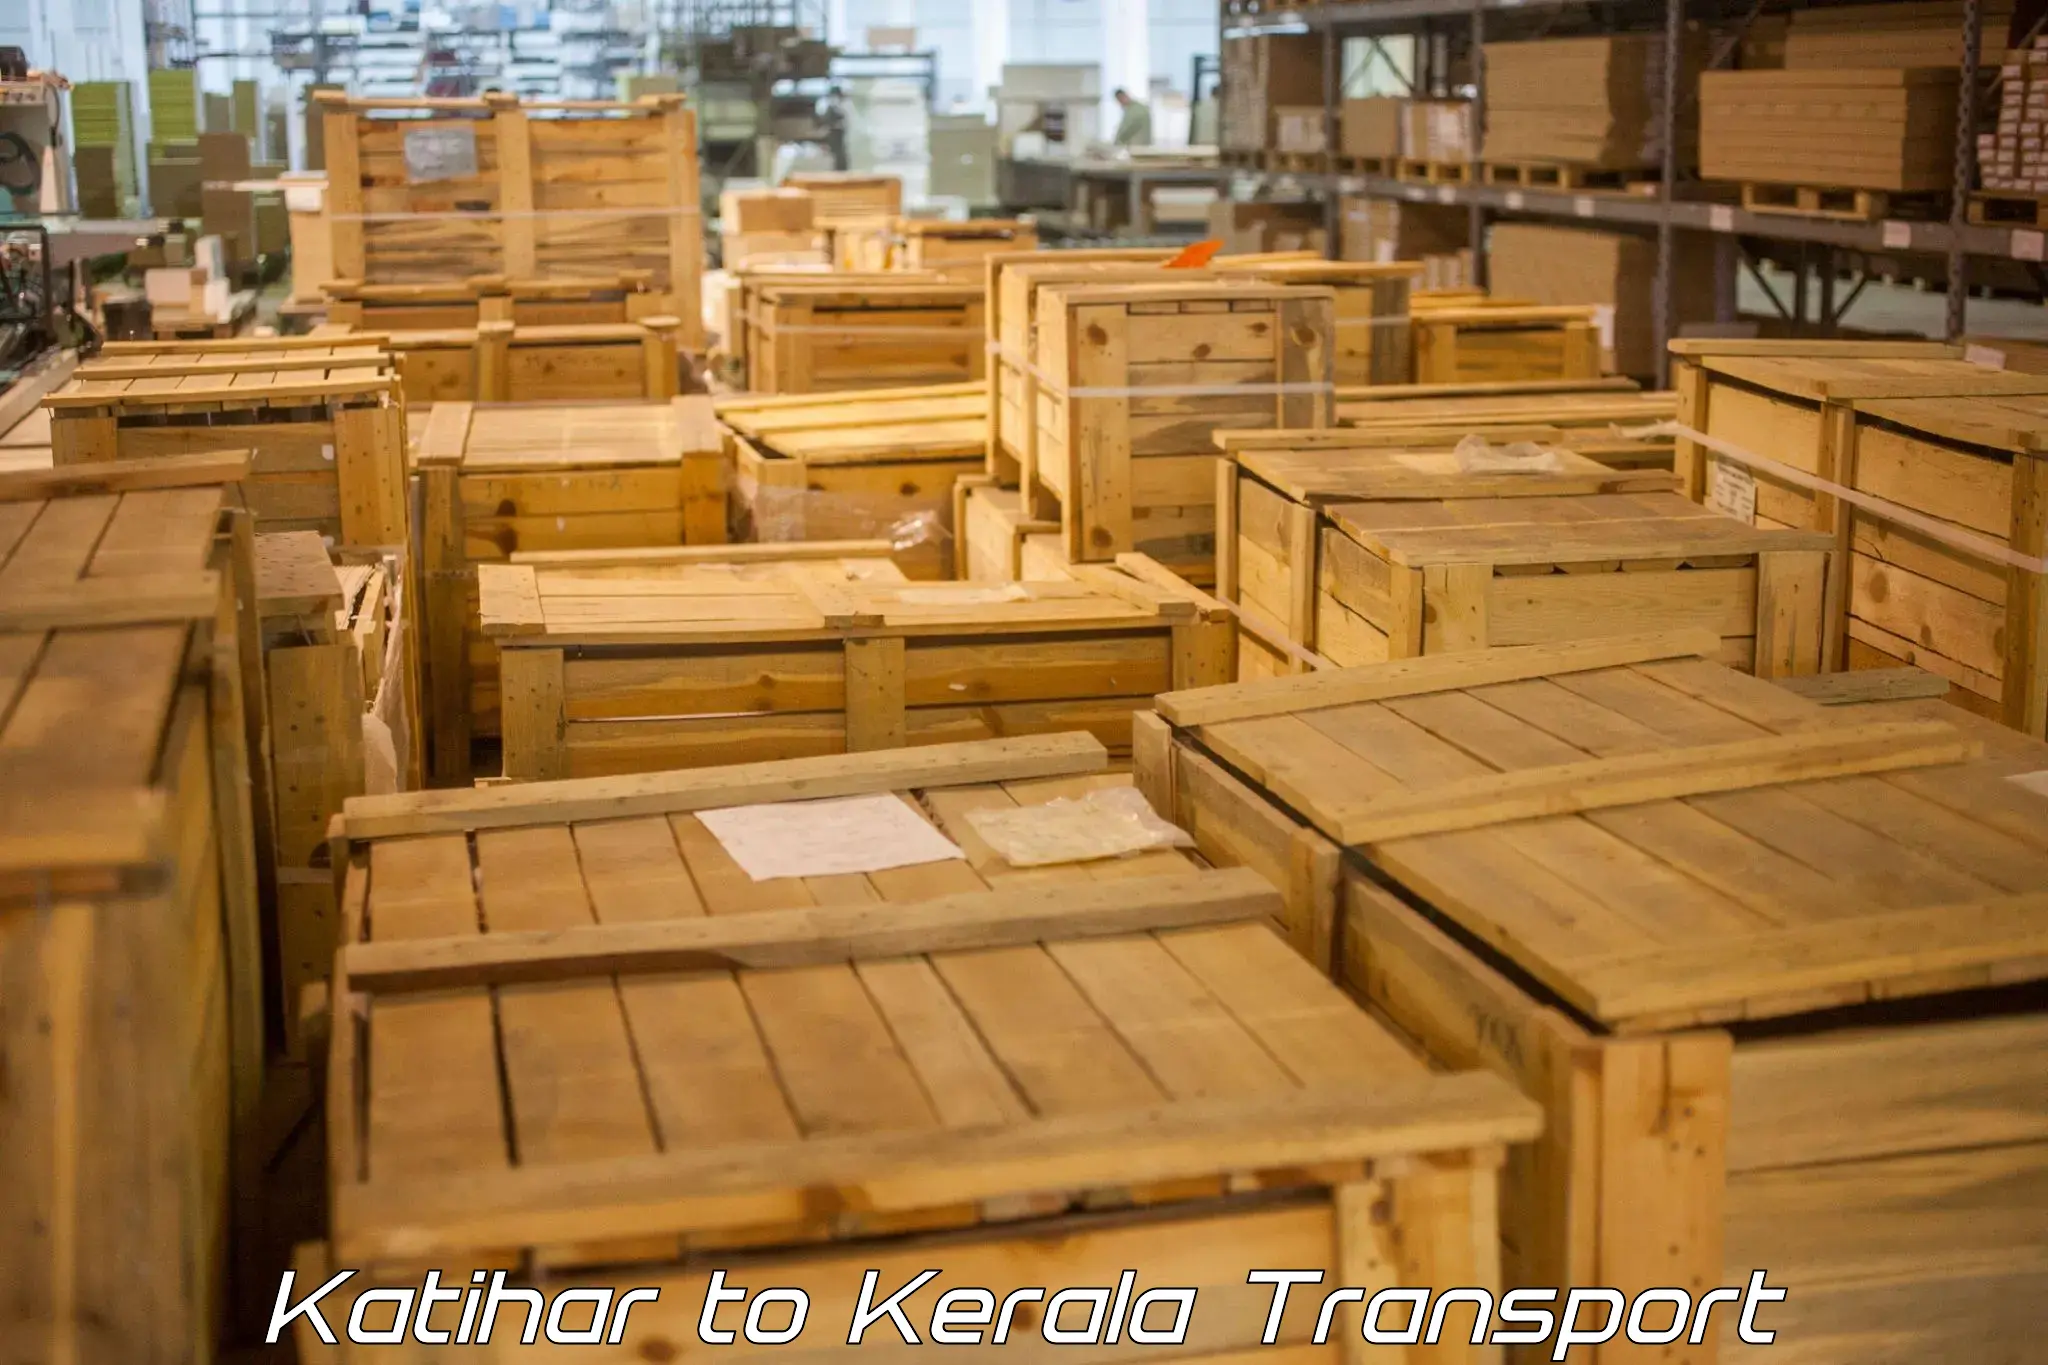 Online transport booking Katihar to Kerala